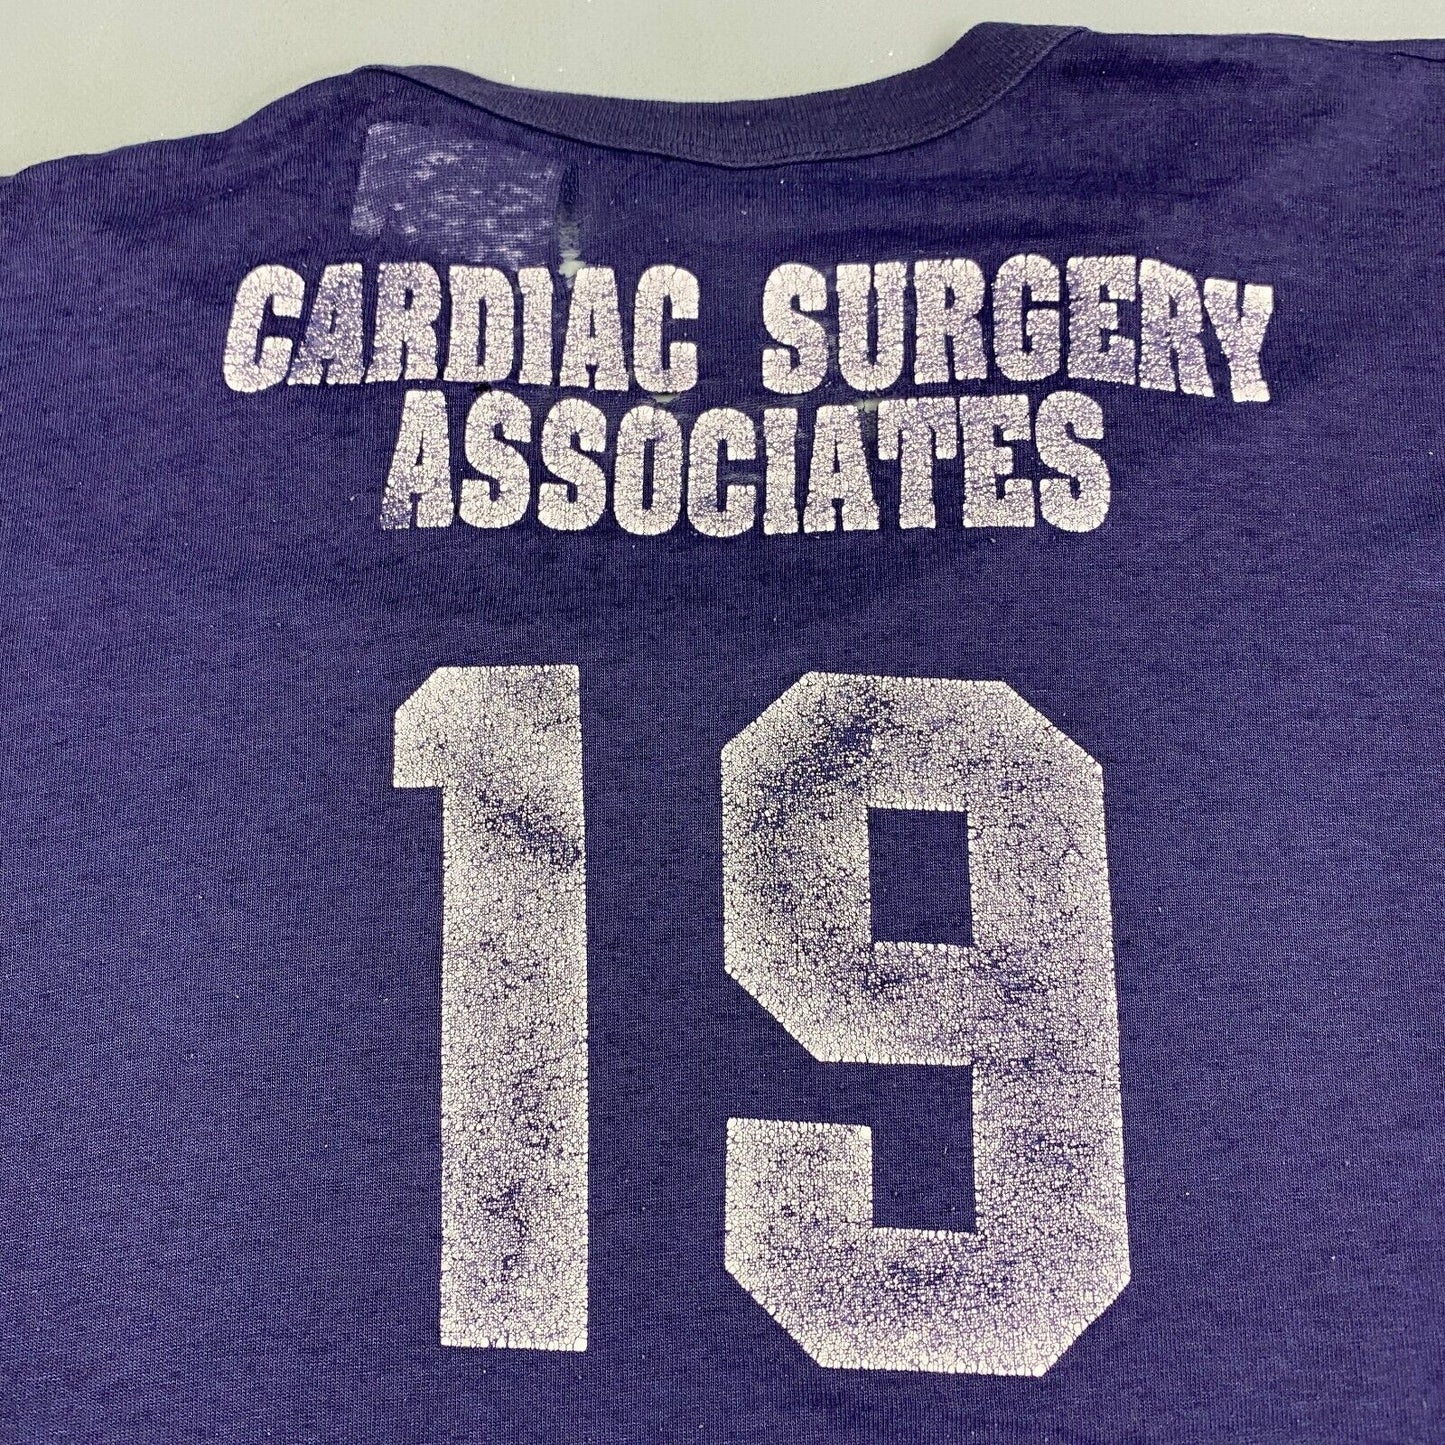 VINTAGE 80s NY Yankees Cardiac Surgery Navy T-Shirt sz Medium Adult